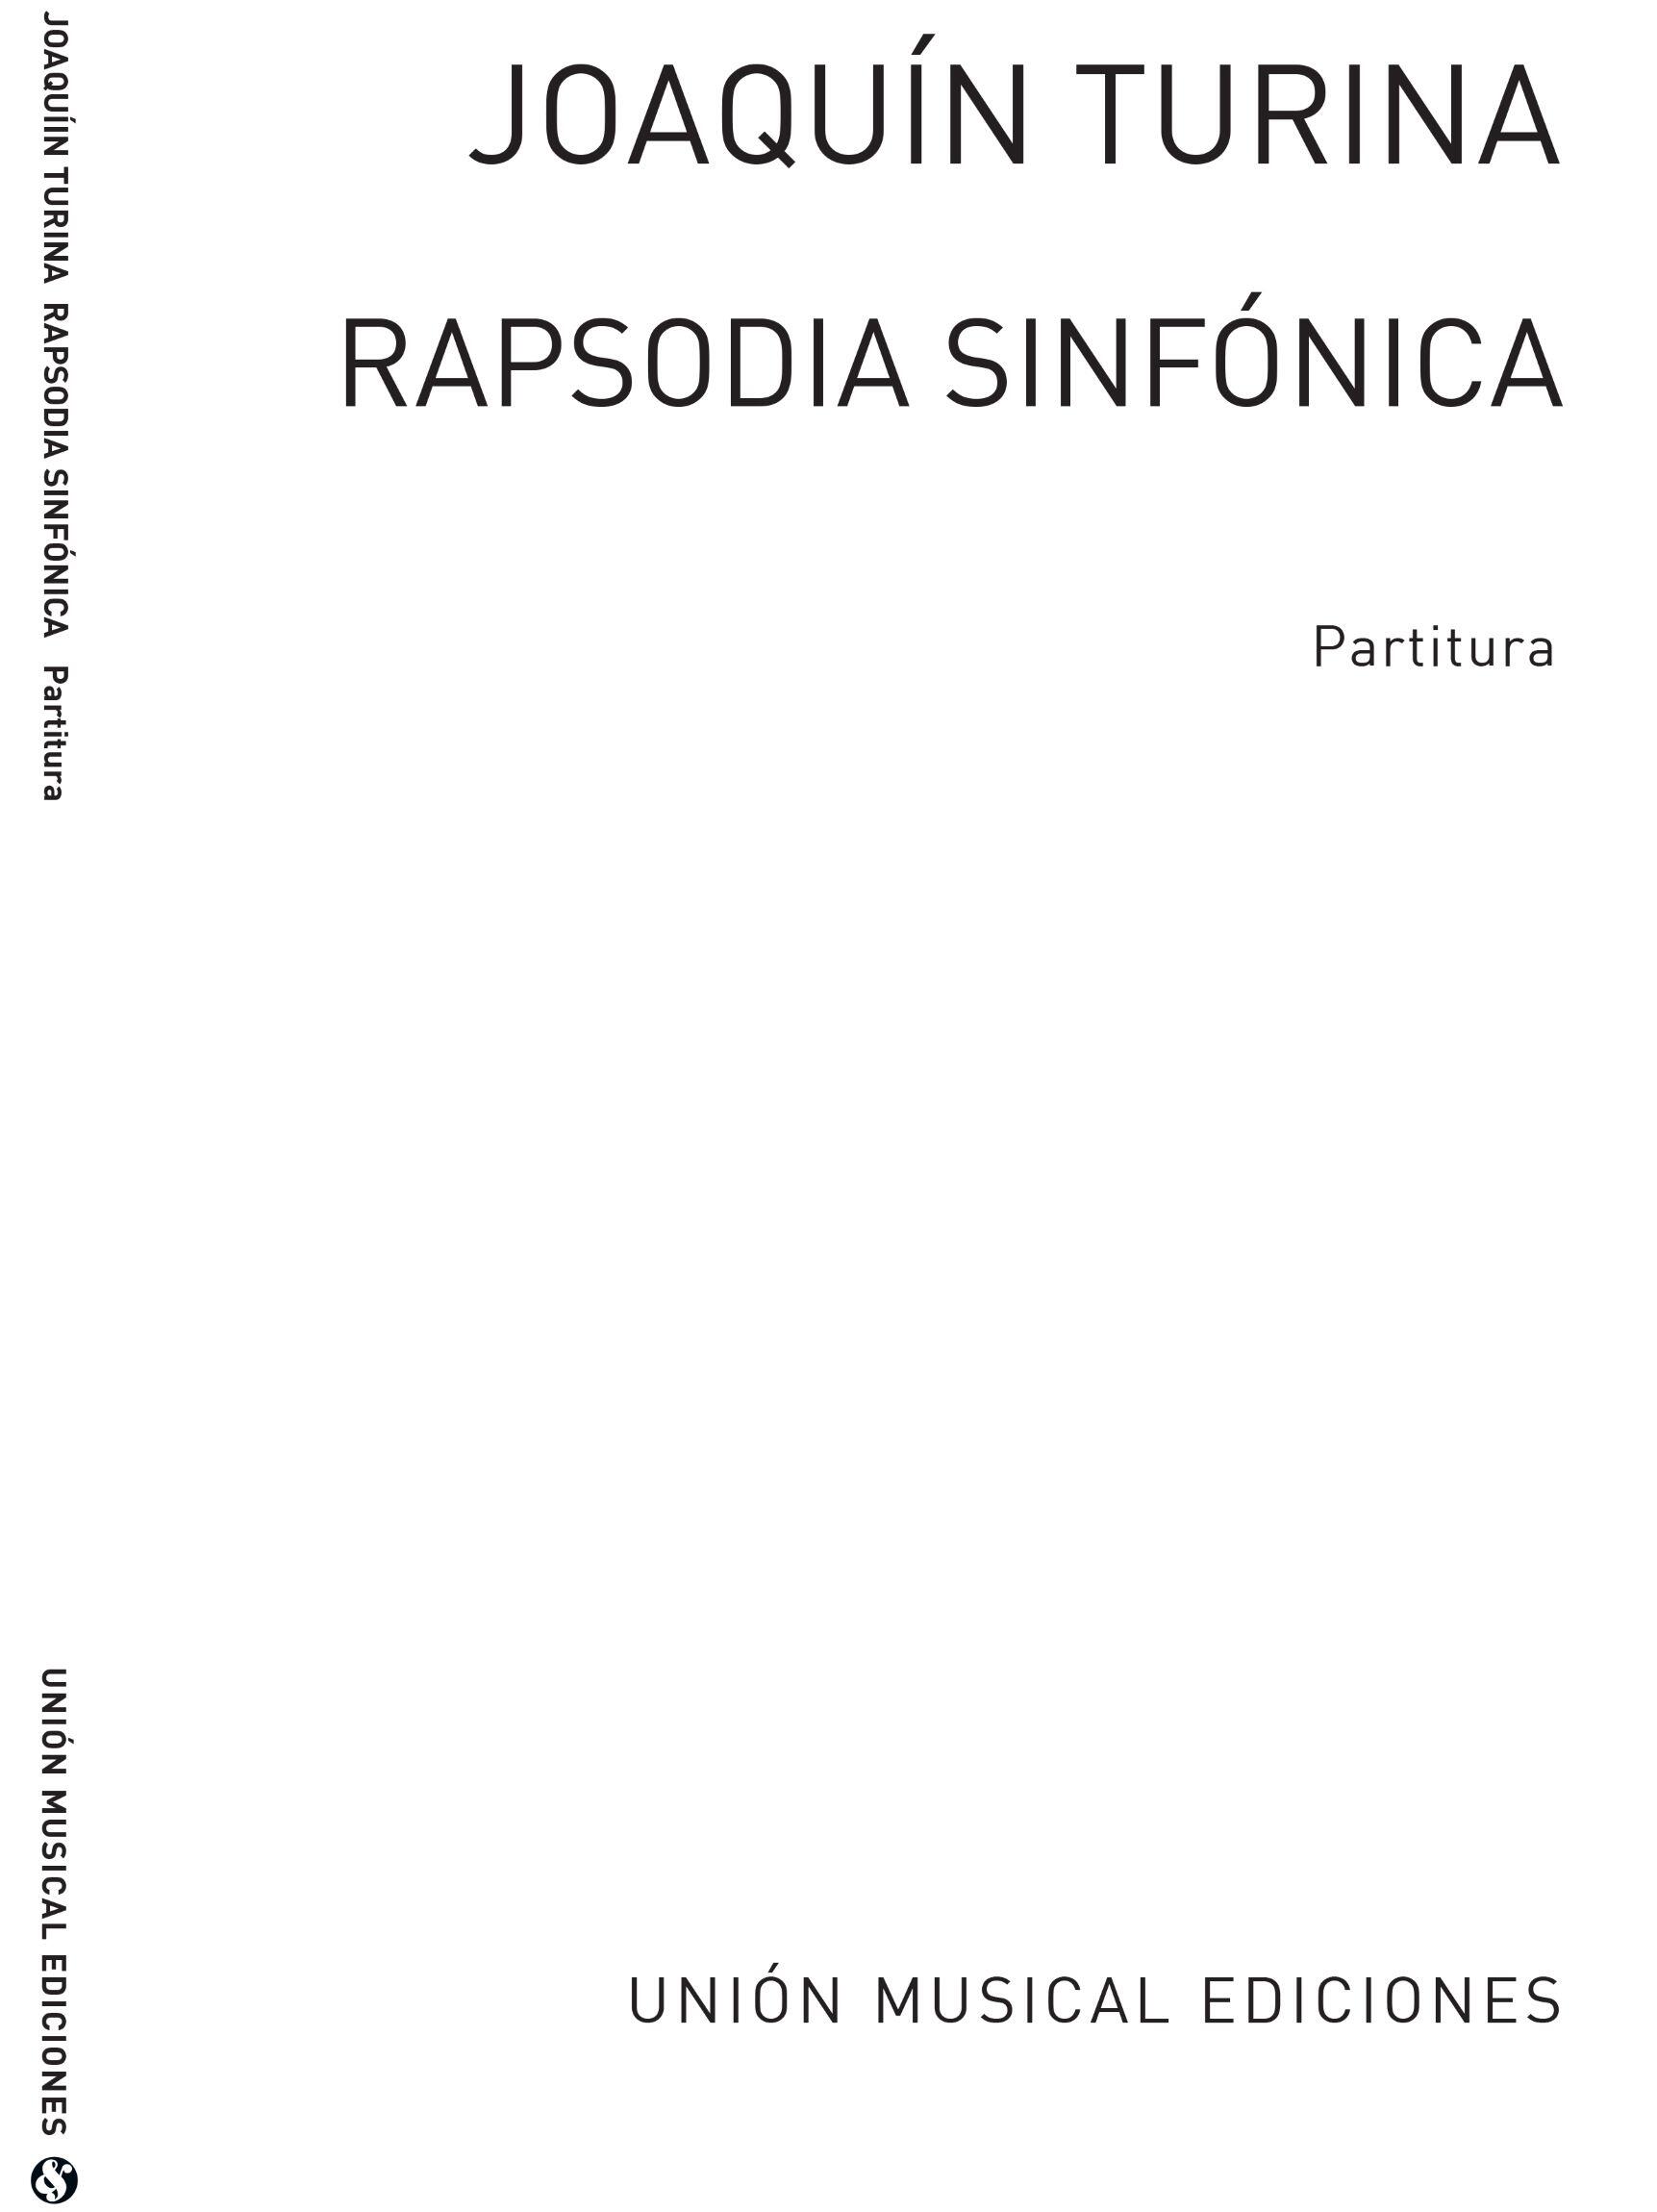 Union Musical Ediciones S.L. Rapsodia Sinfonica : photo 1